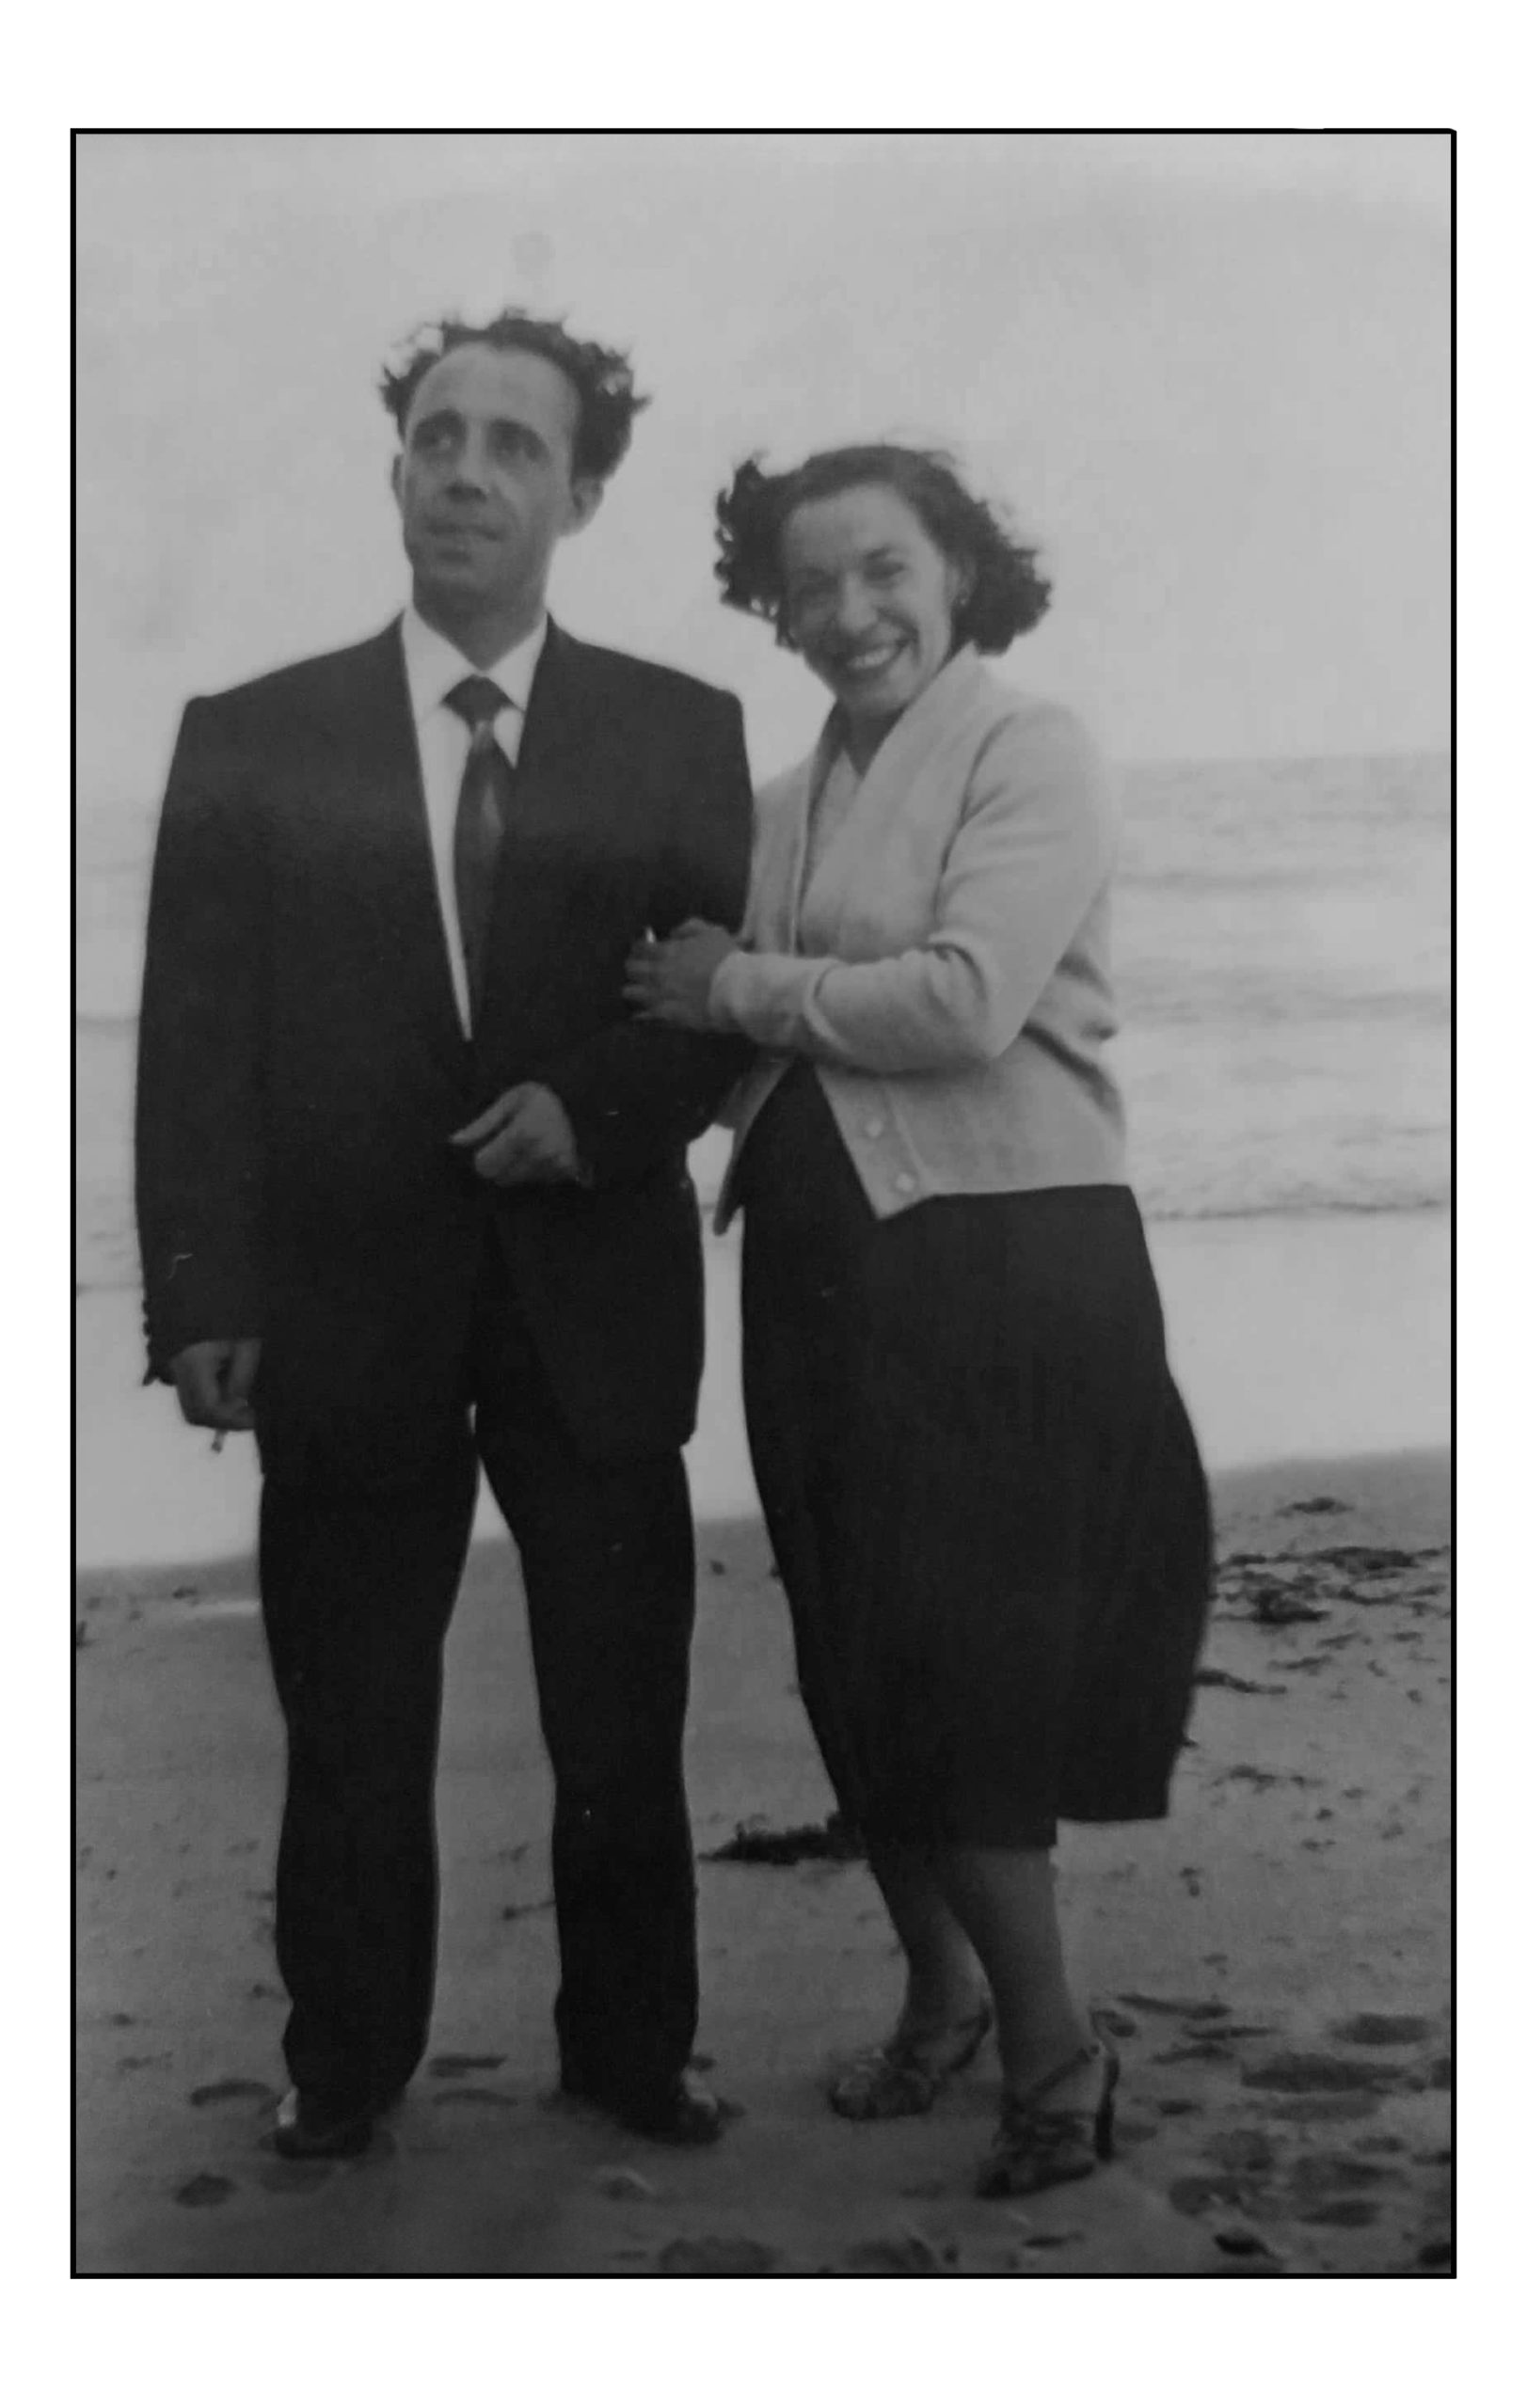 El matrimonio formado por Aurelio Cepedal y María Antonia Hernández en Santander en el año 1957, tras regresar de la Unión Soviética. 